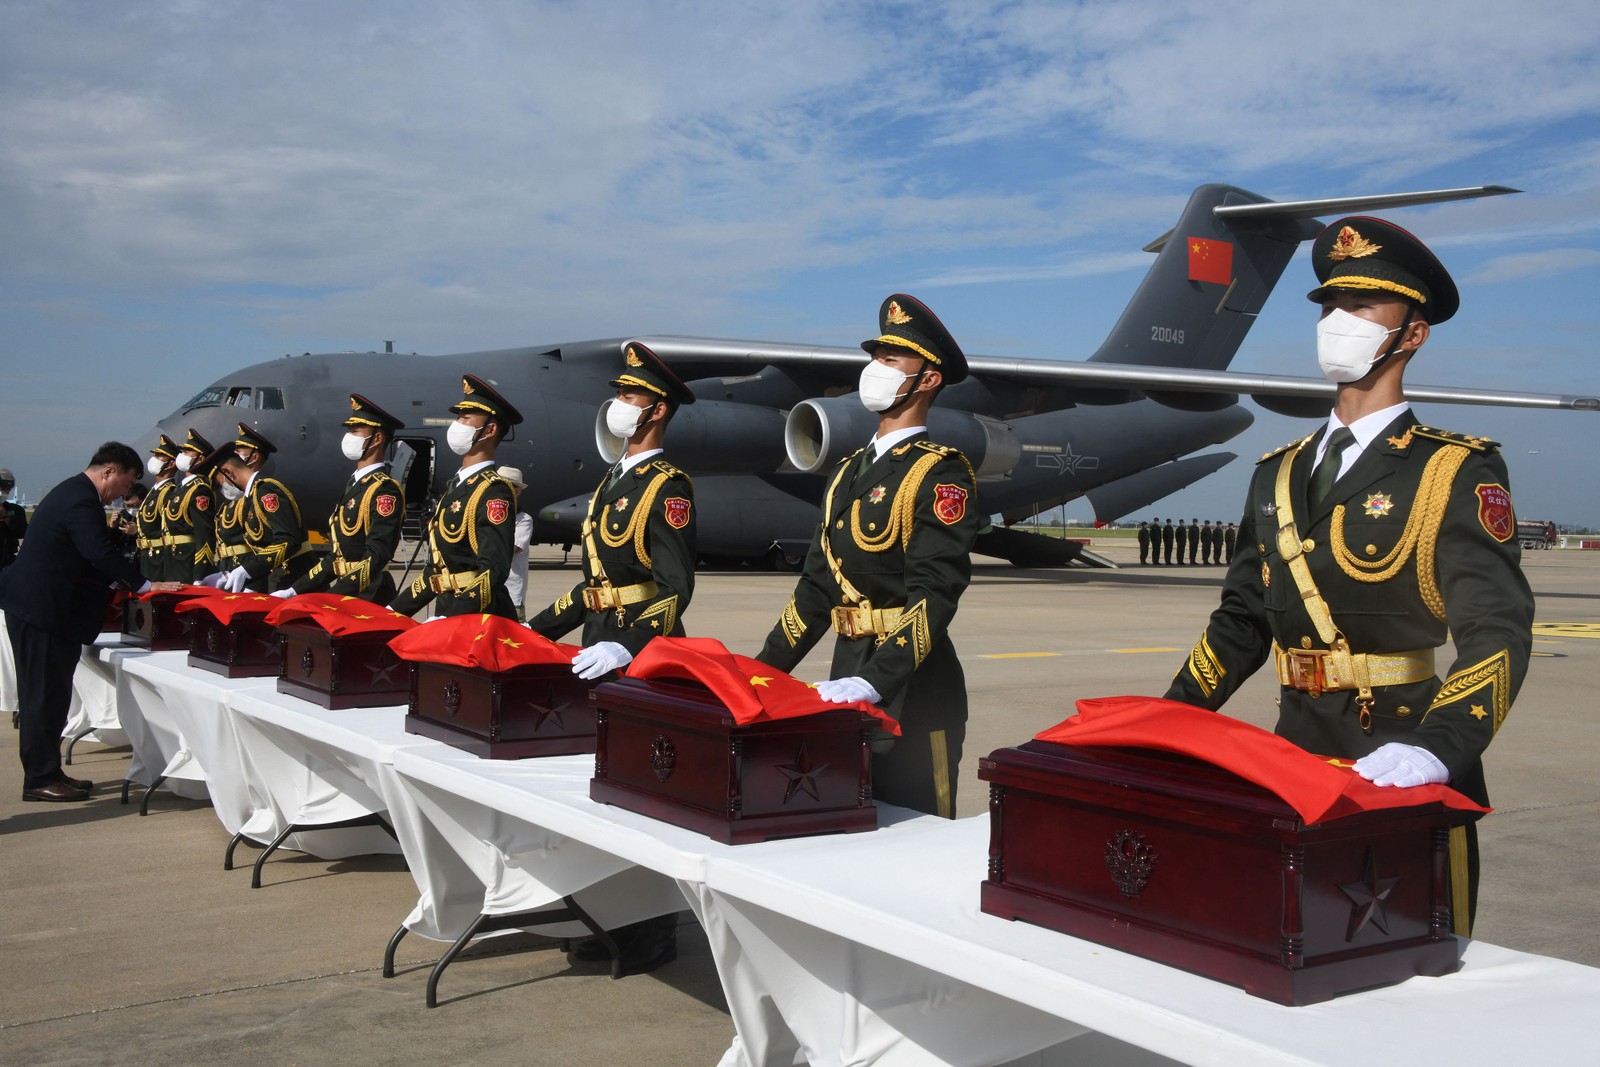 Soldados chineses carregam caixões contendo os restos mortais de soldados chineses durante a cerimônia de entrega no Aeroporto Internacional de Incheon, em Incheon  — Foto: SONG KYUNG-SEOK/AFP